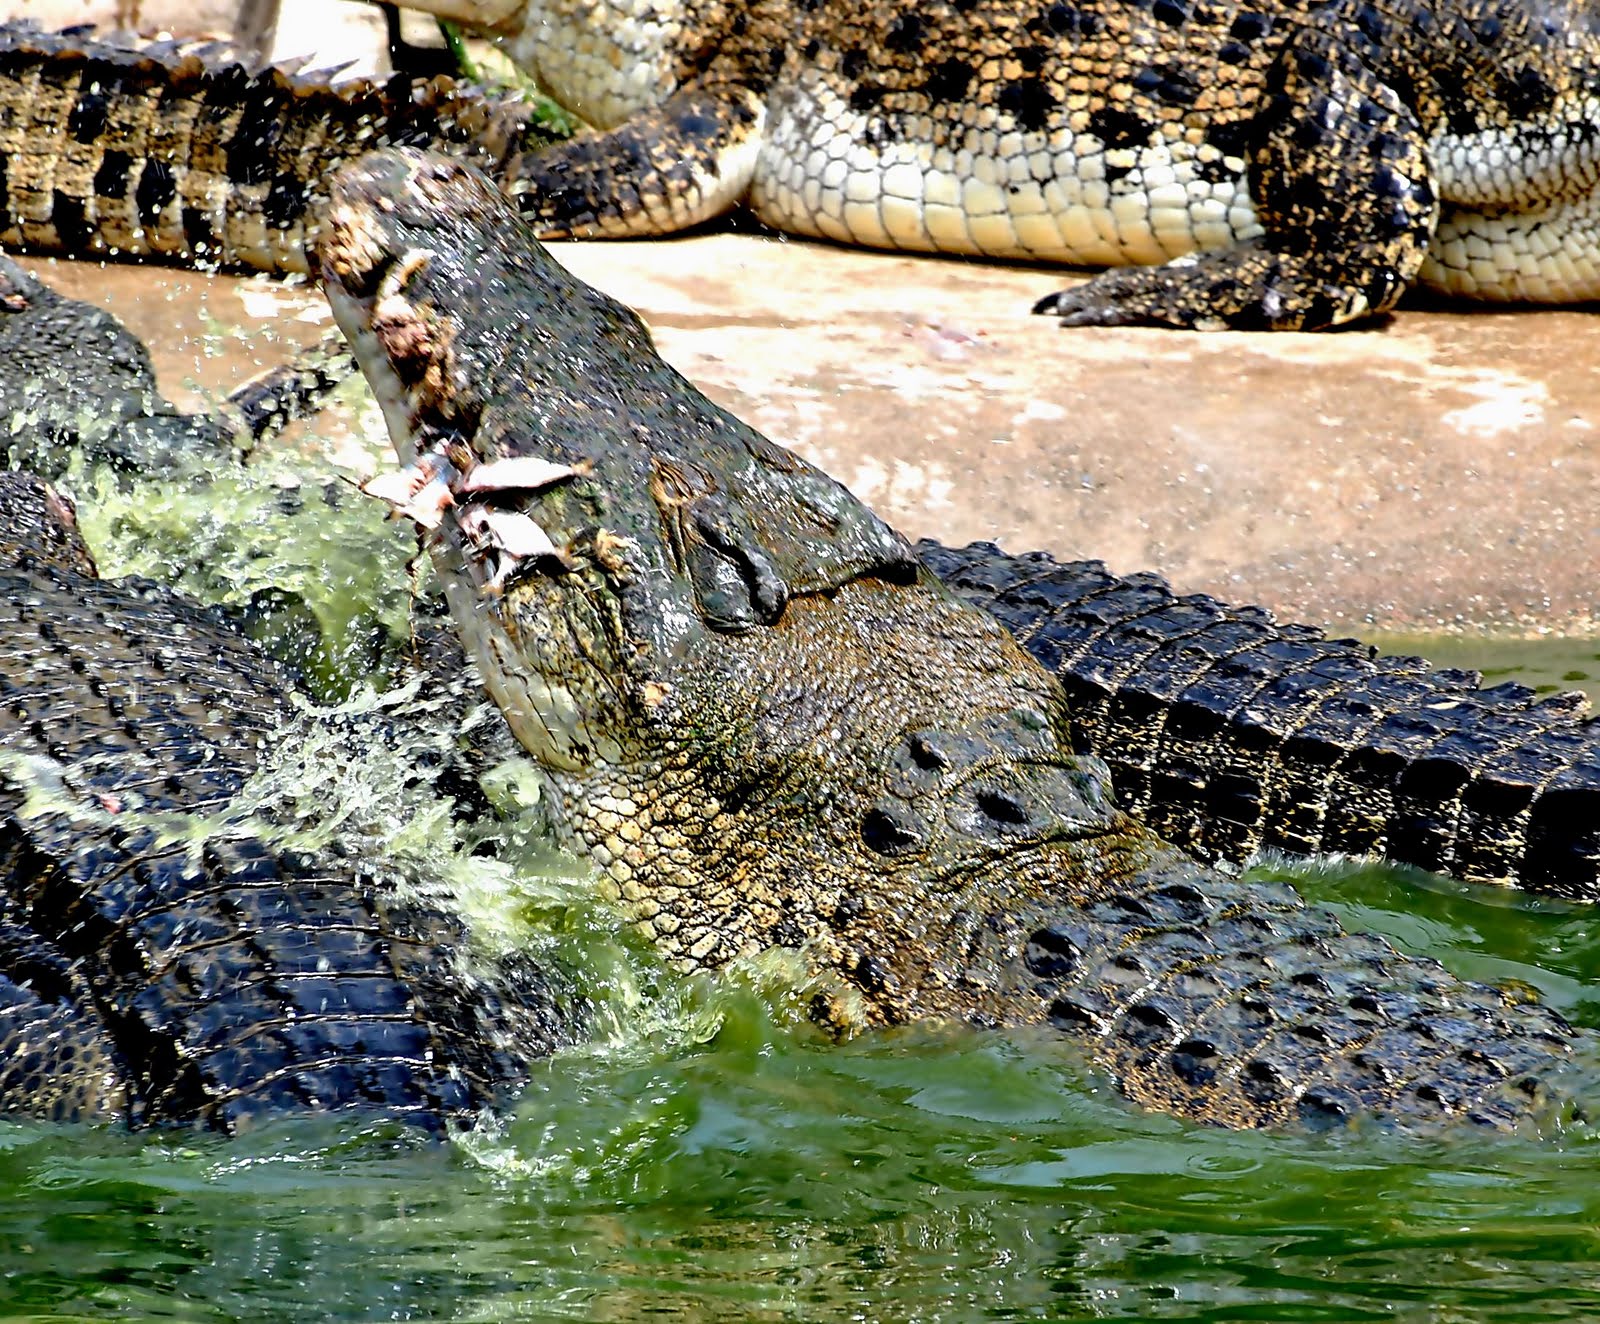 Freshwater crocodile   wikipedia